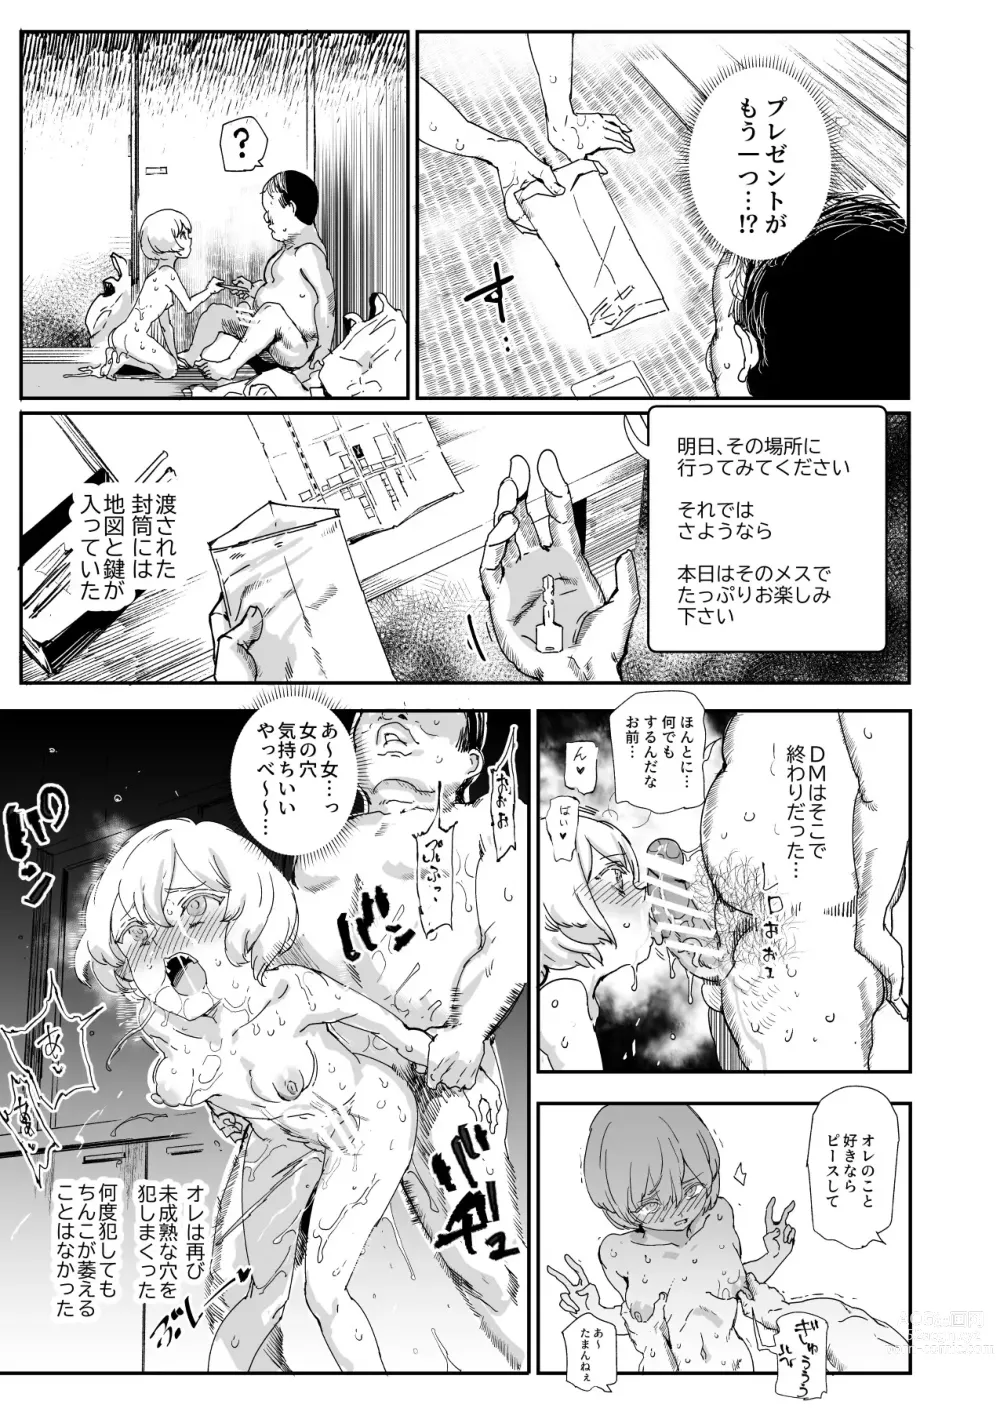 Page 17 of doujinshi 500-en de Baishun Kakutei Cheat